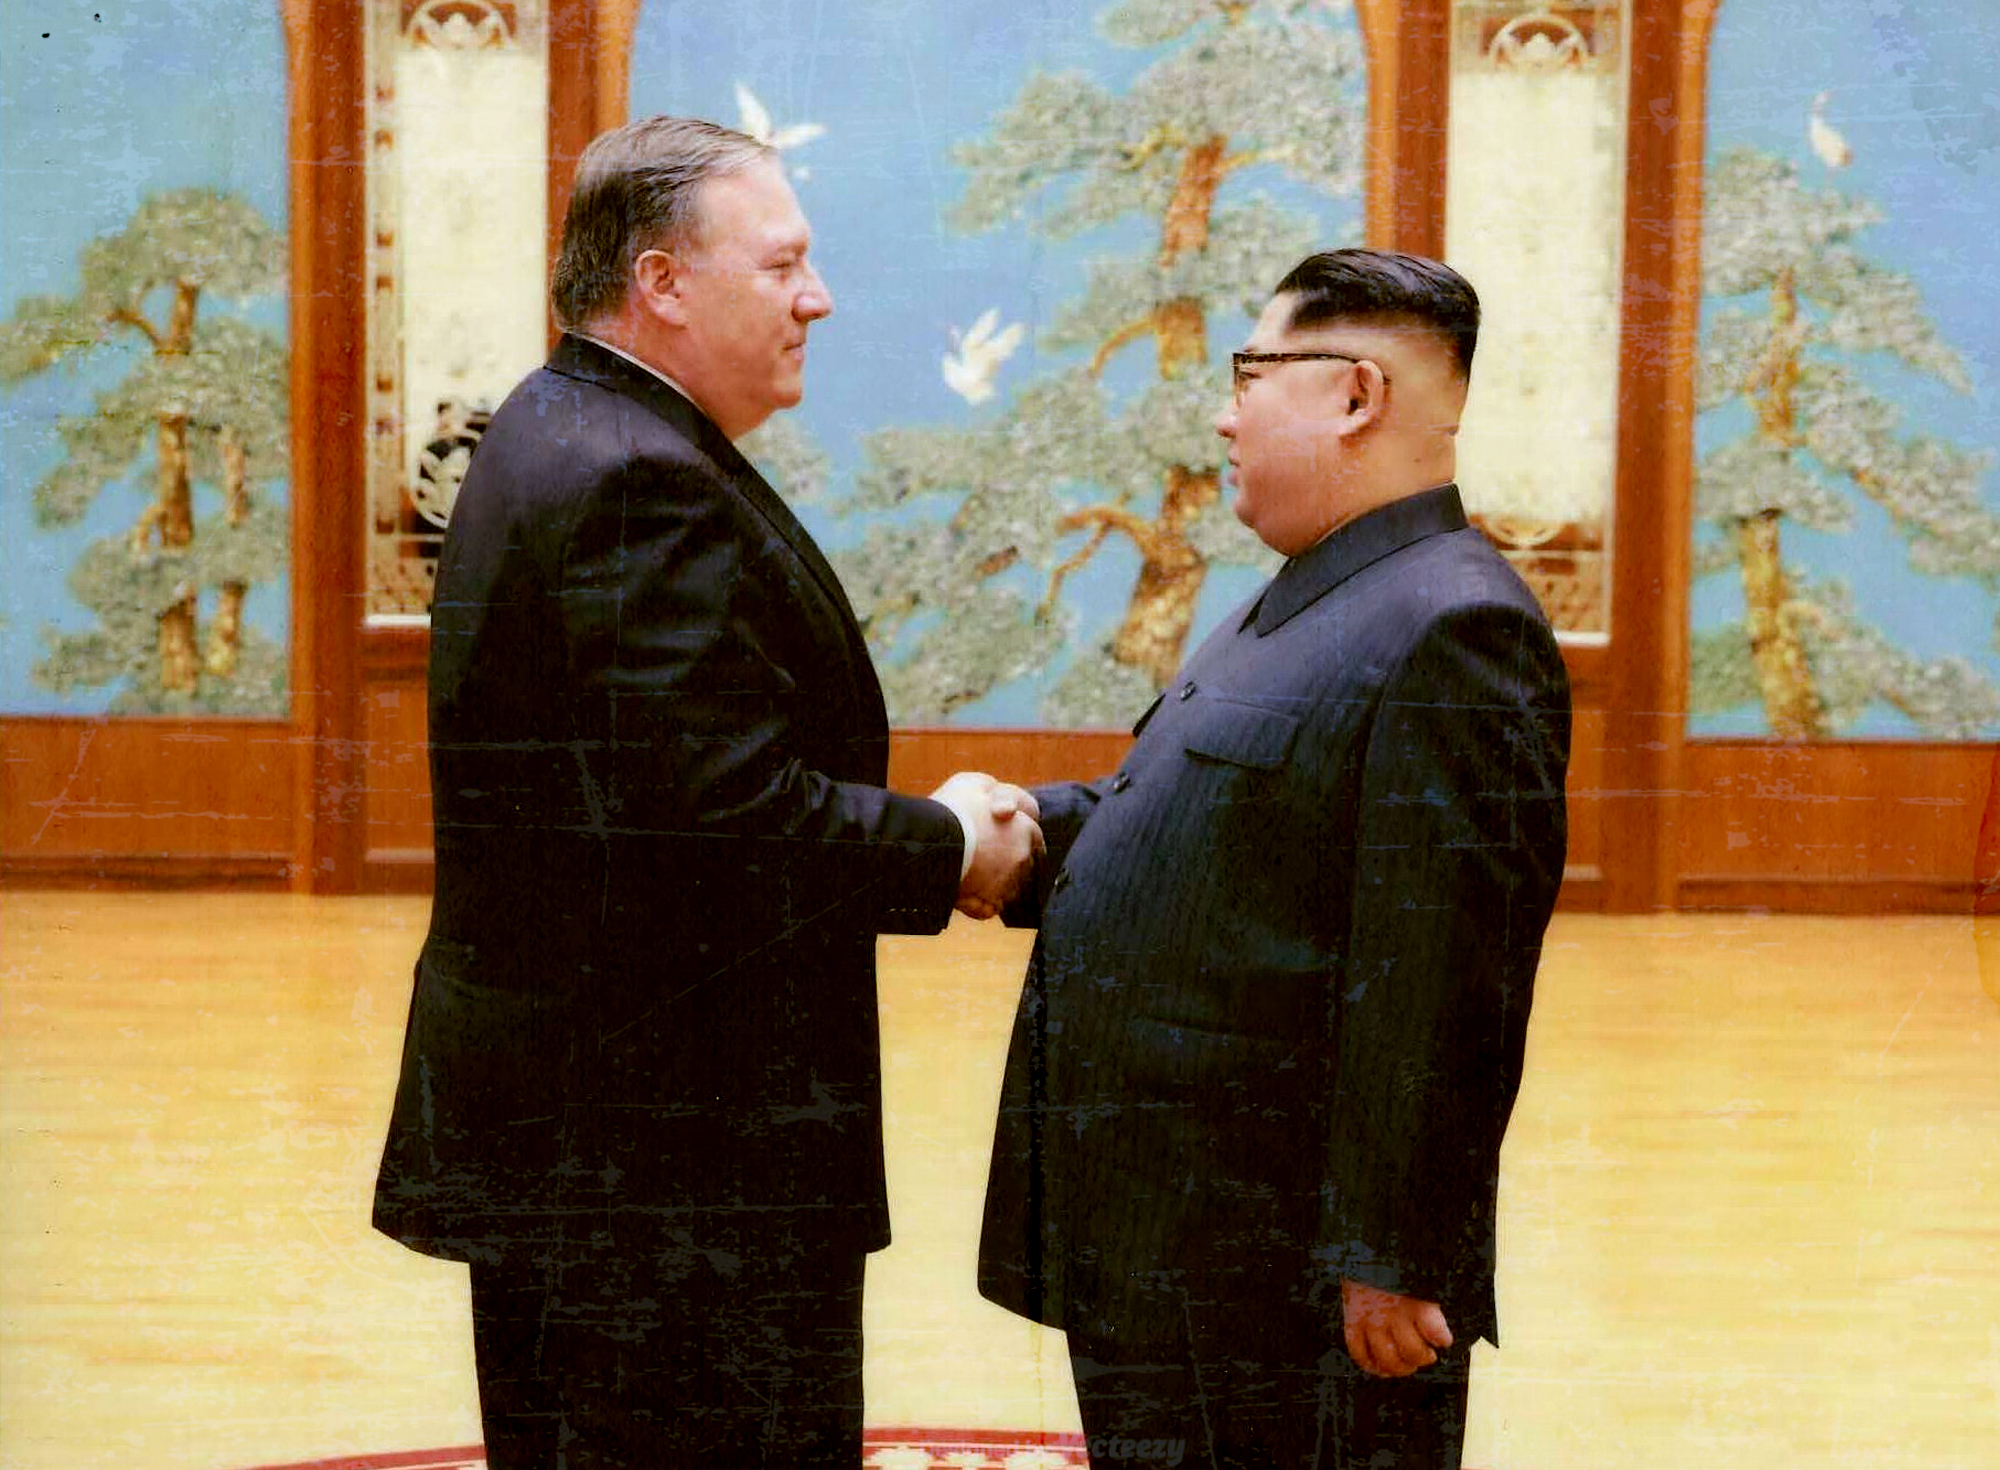 Ngoại trưởng được đề cử Mike Pompeo đã tiến hành một chuyến thăm bí mật đến Triều Tiên vào hồi tháng tư và gặp nhà lãnh đạo Triều Tiên Kim Jong-un. (Nguồn: Foxnews)